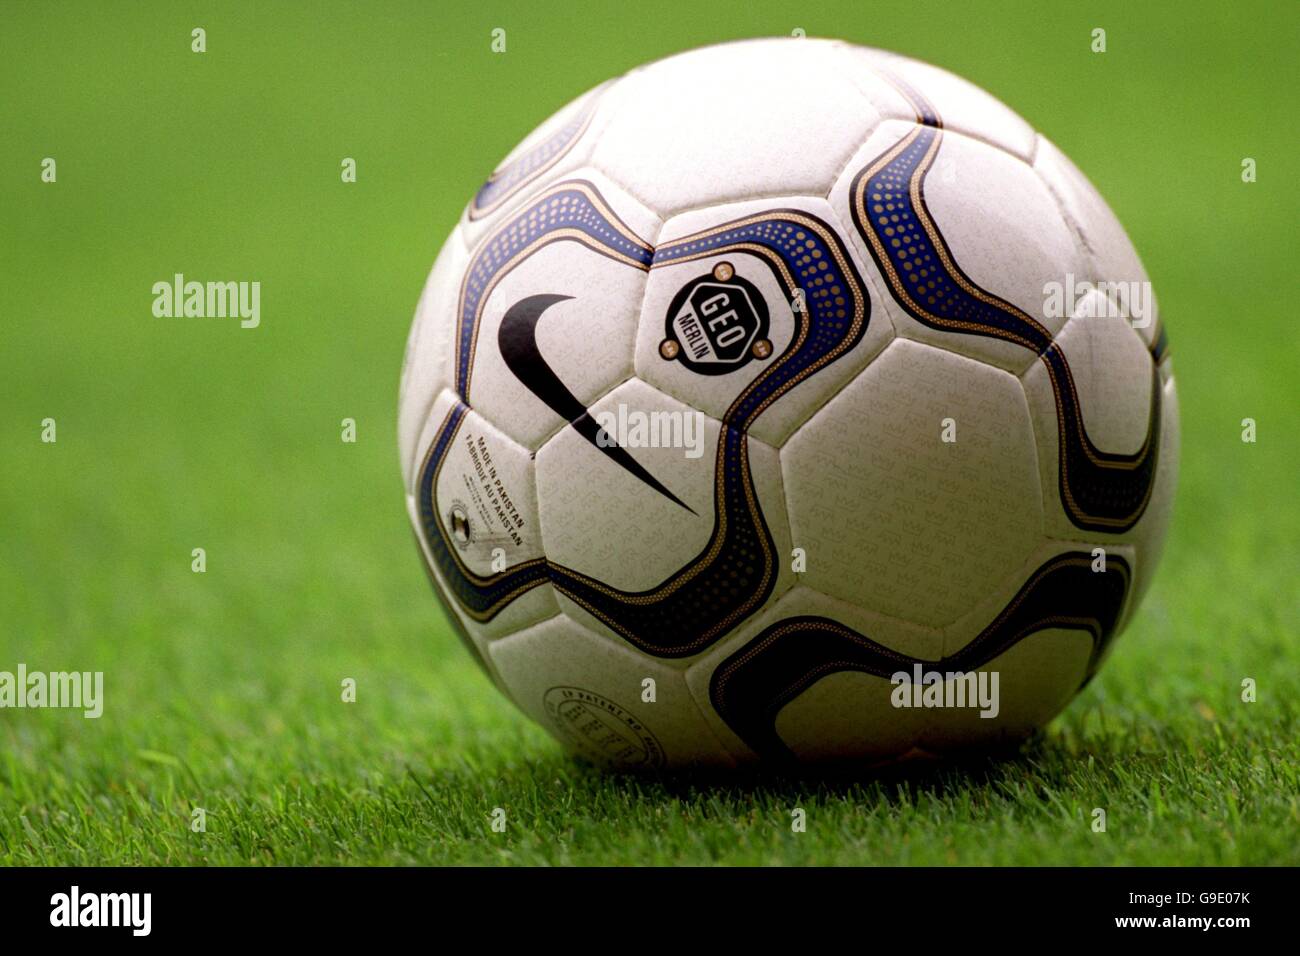 Fútbol - FA Carling Premiership - Manchester United contra Sunderland. El nuevo balón de fútbol Nike Geo Foto de stock